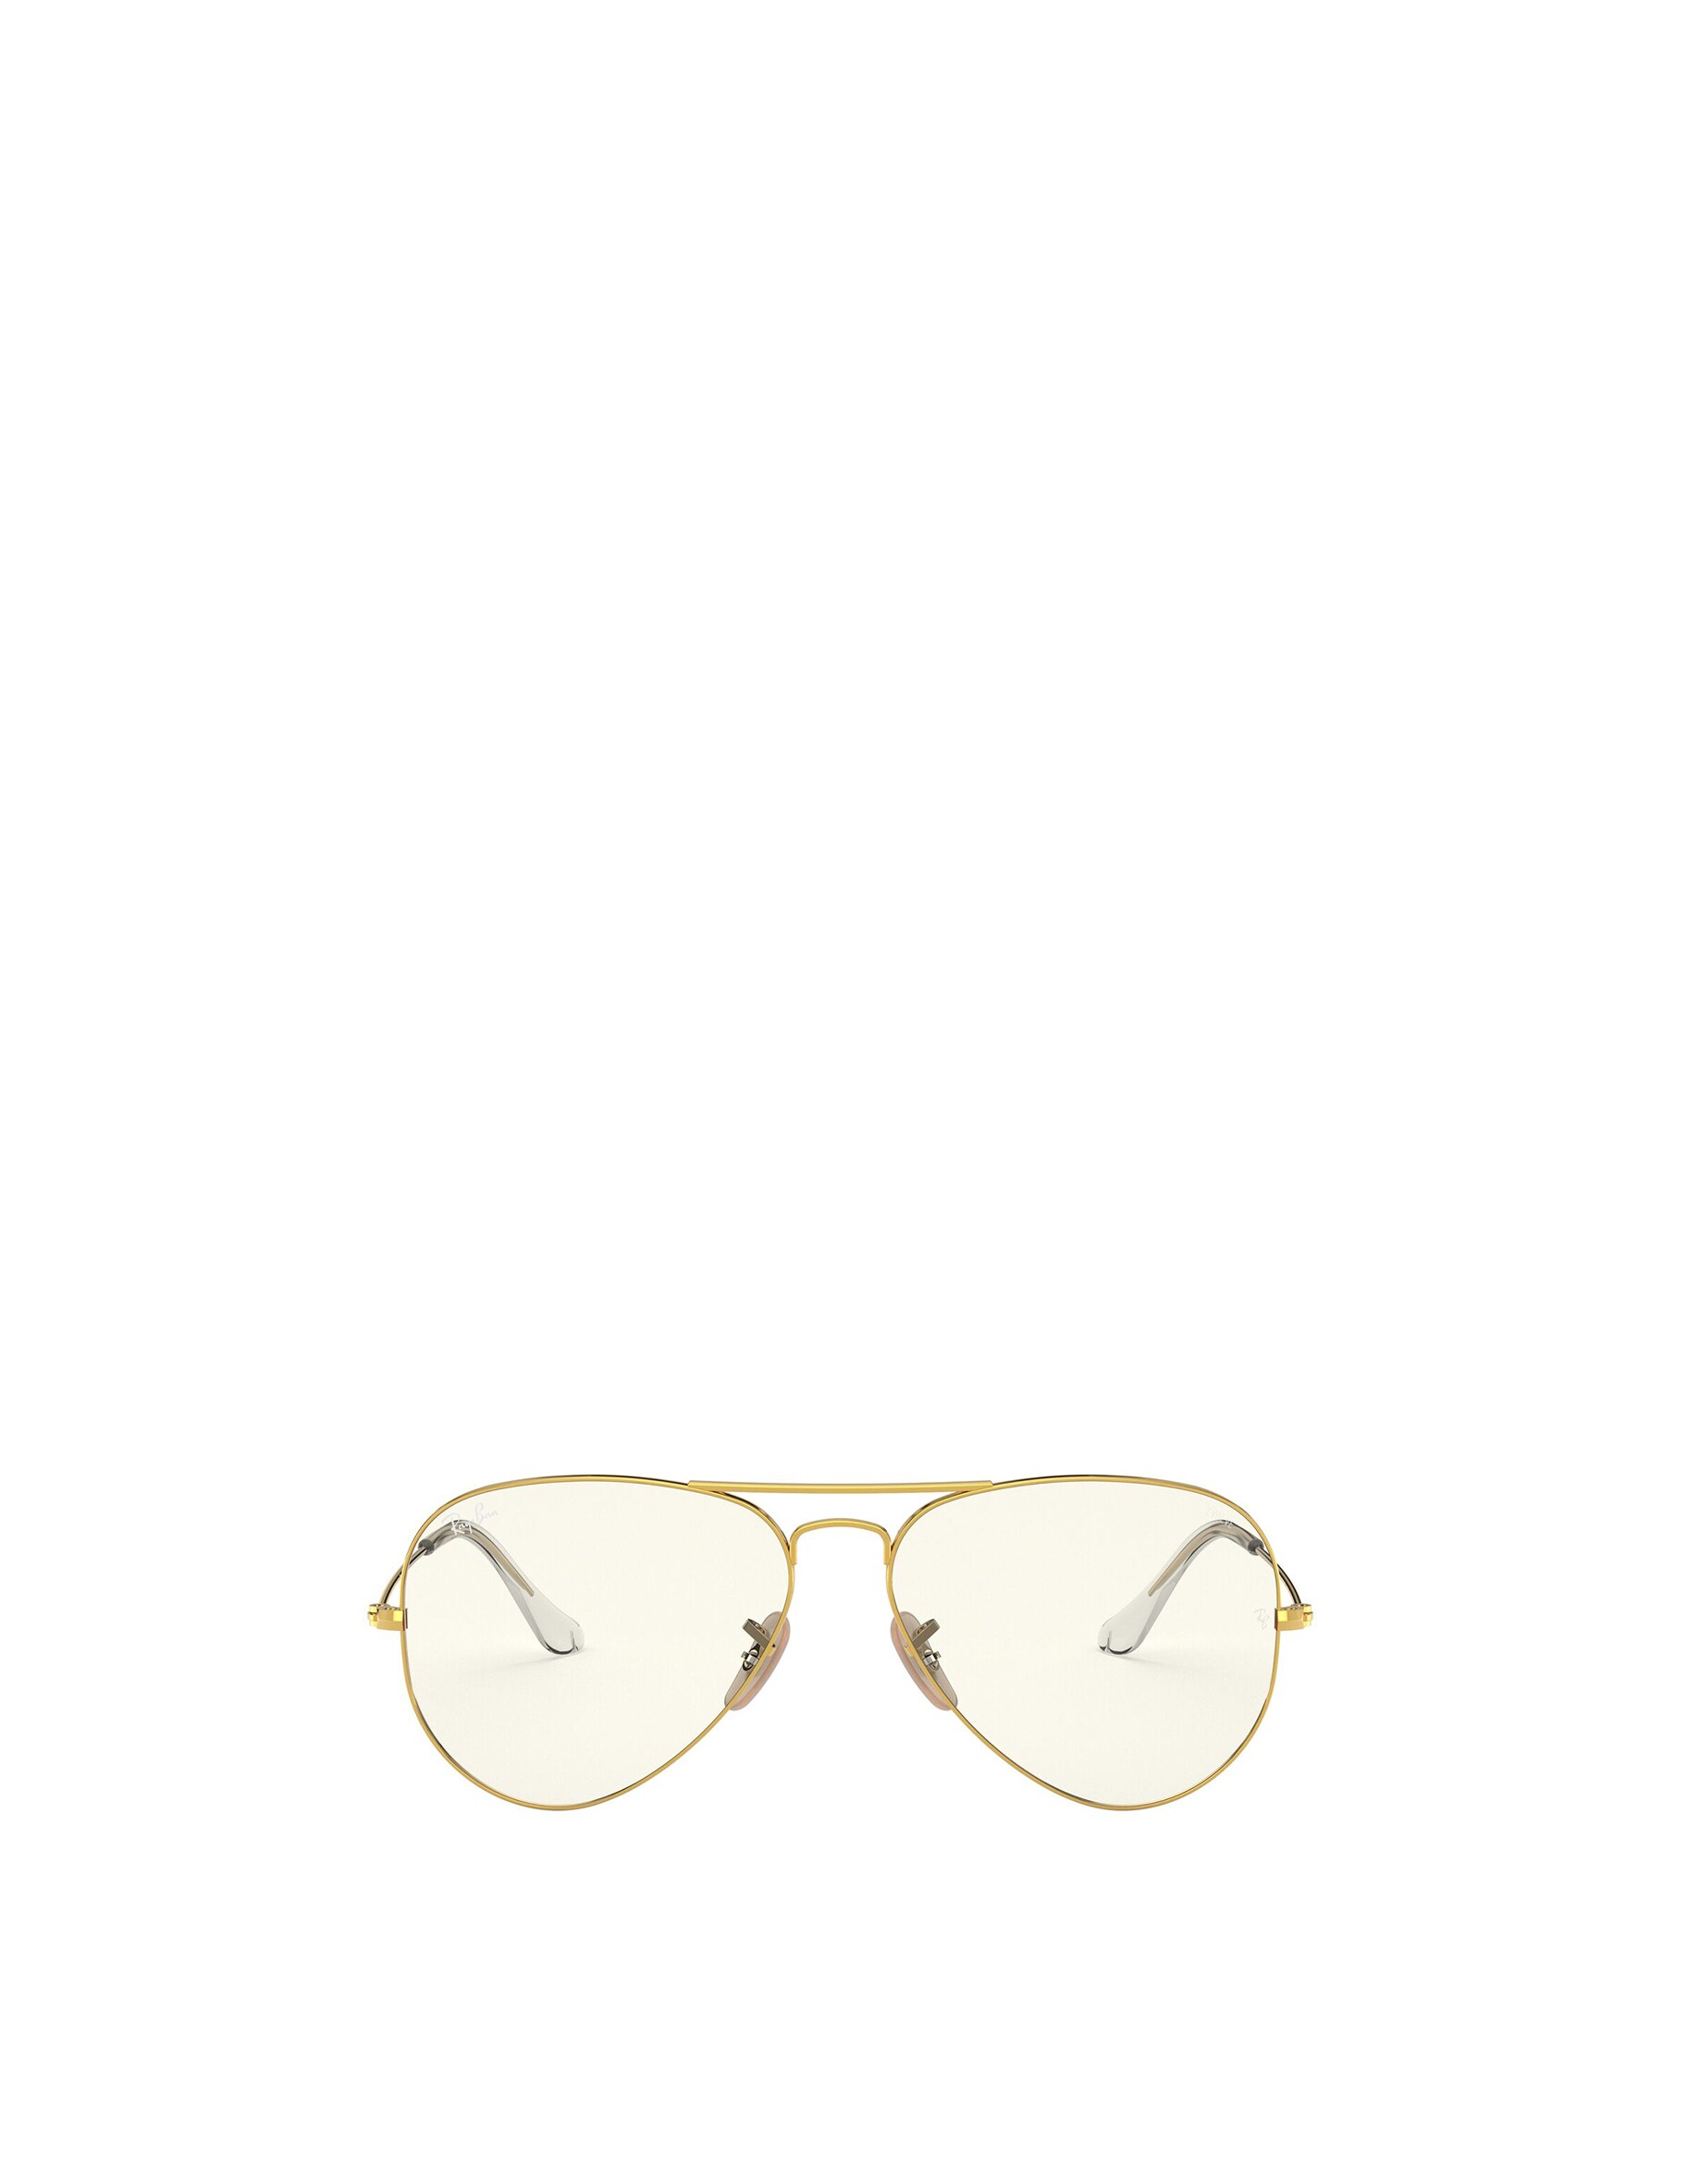 солнцезащитные очки ray ban авиаторы оправа металл складные с защитой от уф золотой Солнцезащитные очки-авиаторы Ray-ban Ray-Ban, золотой